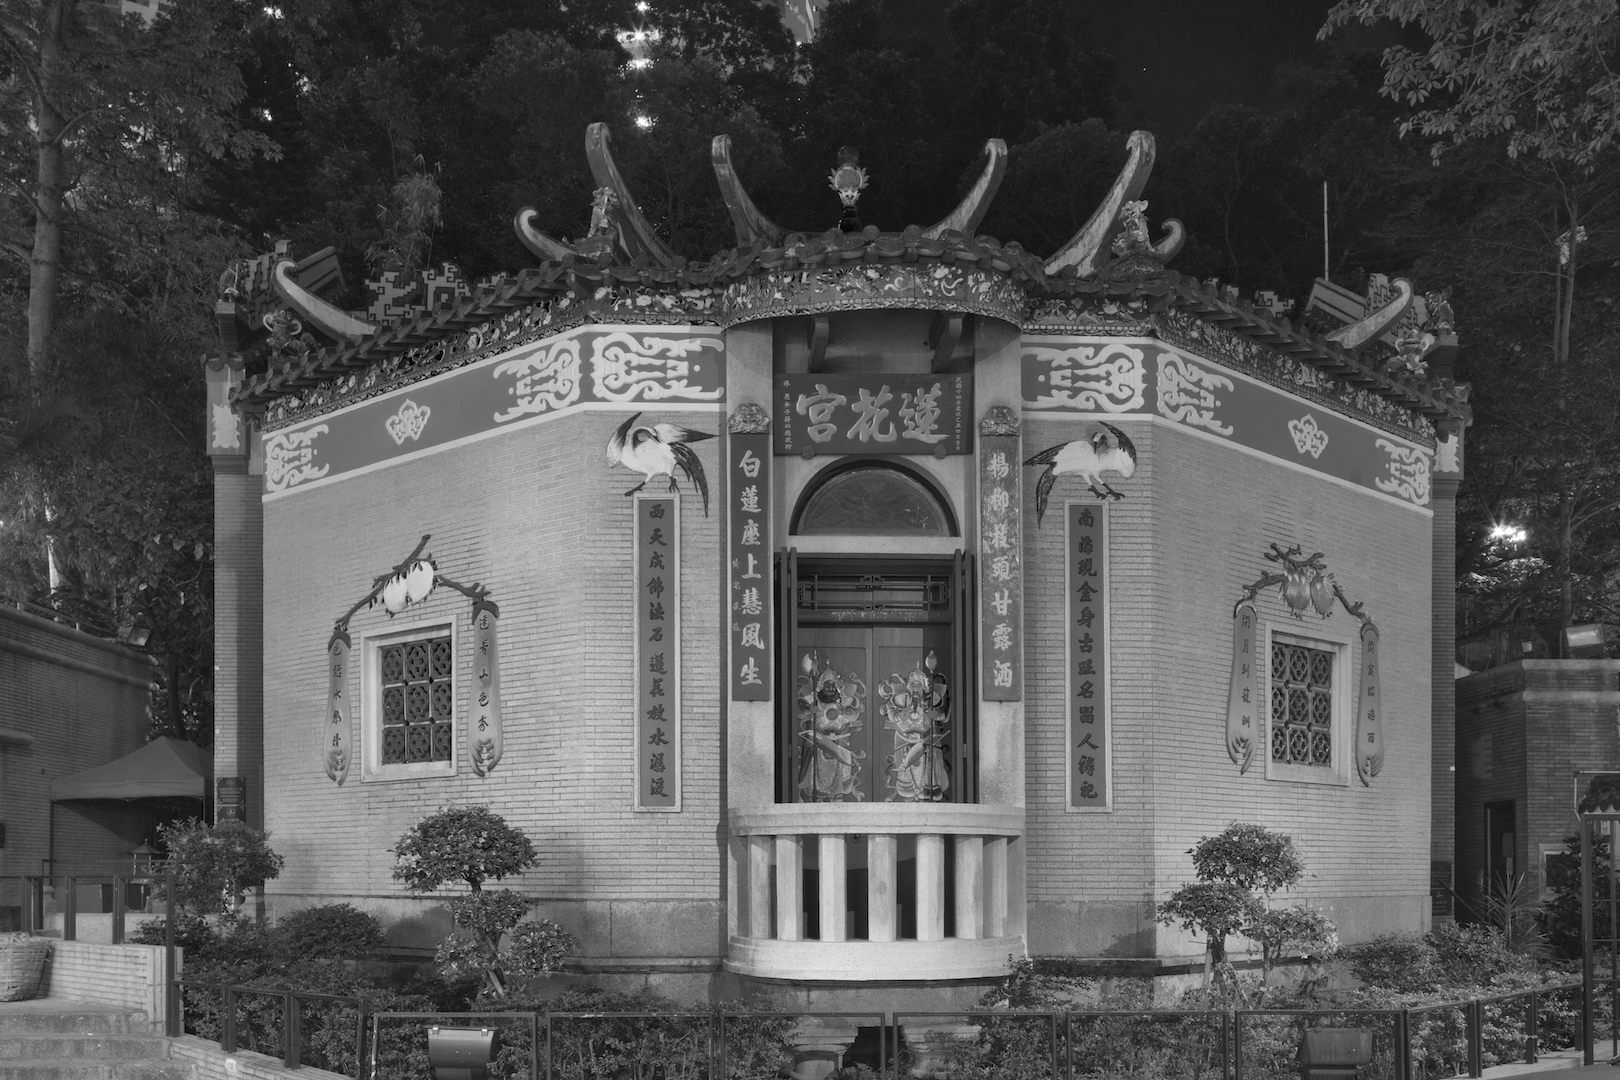 Extrait de la série "Temples" par Dick Chan : la nuit, les images des deux dieux du temple apparaisse plus clairement sur la porte. Hong Kong, 2017. (Copyright : Dick Chan)